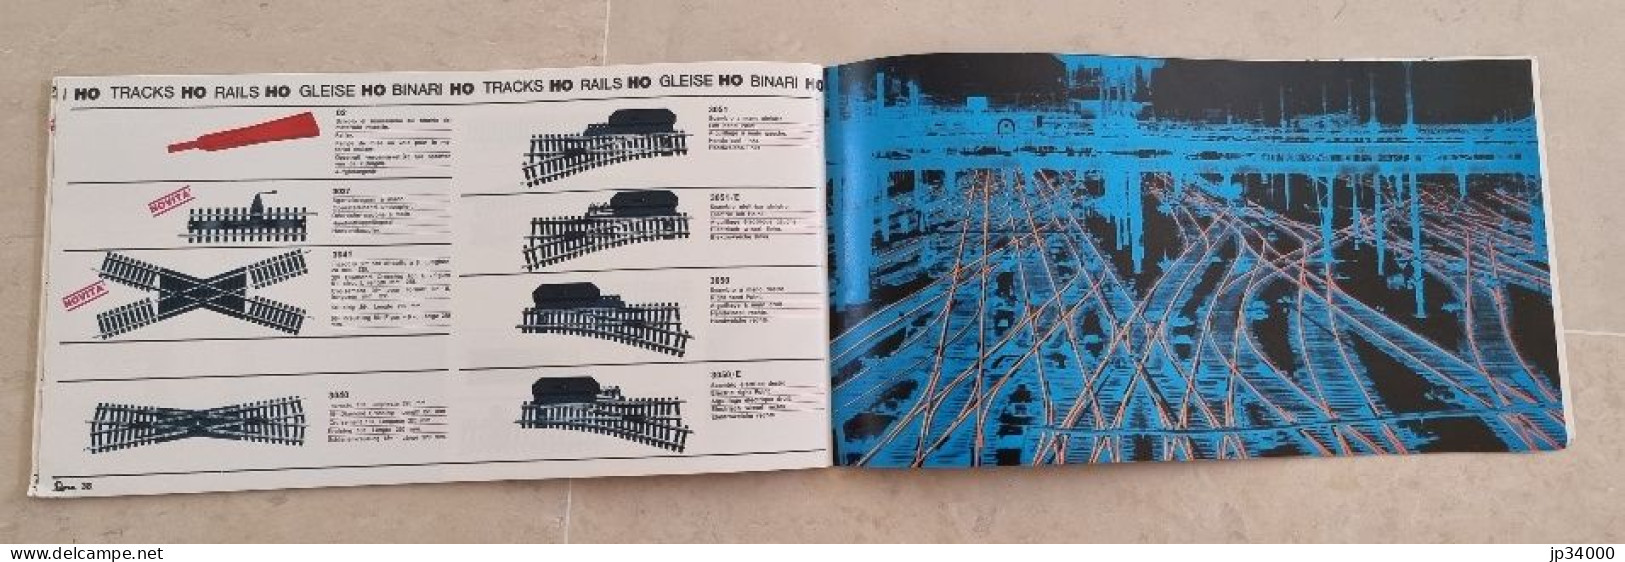 Catalogue Illustré TRAINS ELECTRIQUES (LIMA HO) 1968-69 (texte Multi Langues) - Locomotive